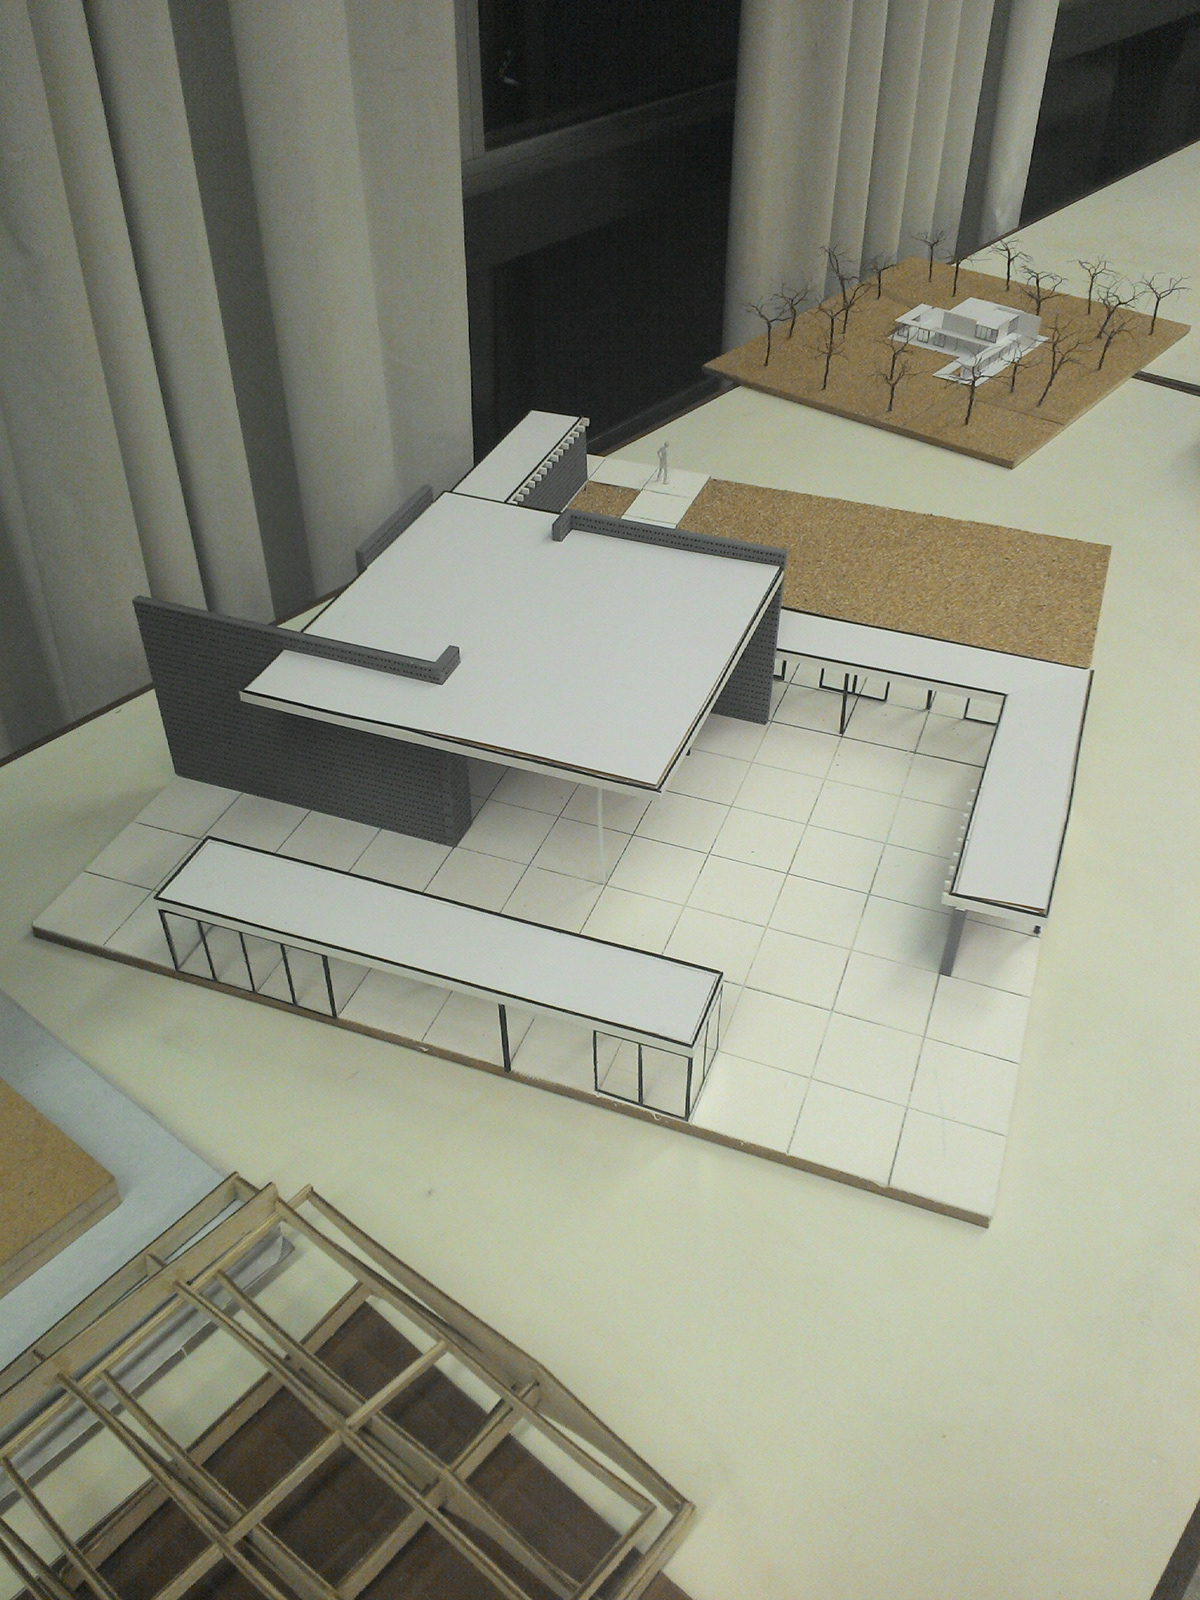 Gerrit Rietveld model scale puc-rio ARQUITETURA maquete pavilion Maquete Fisica